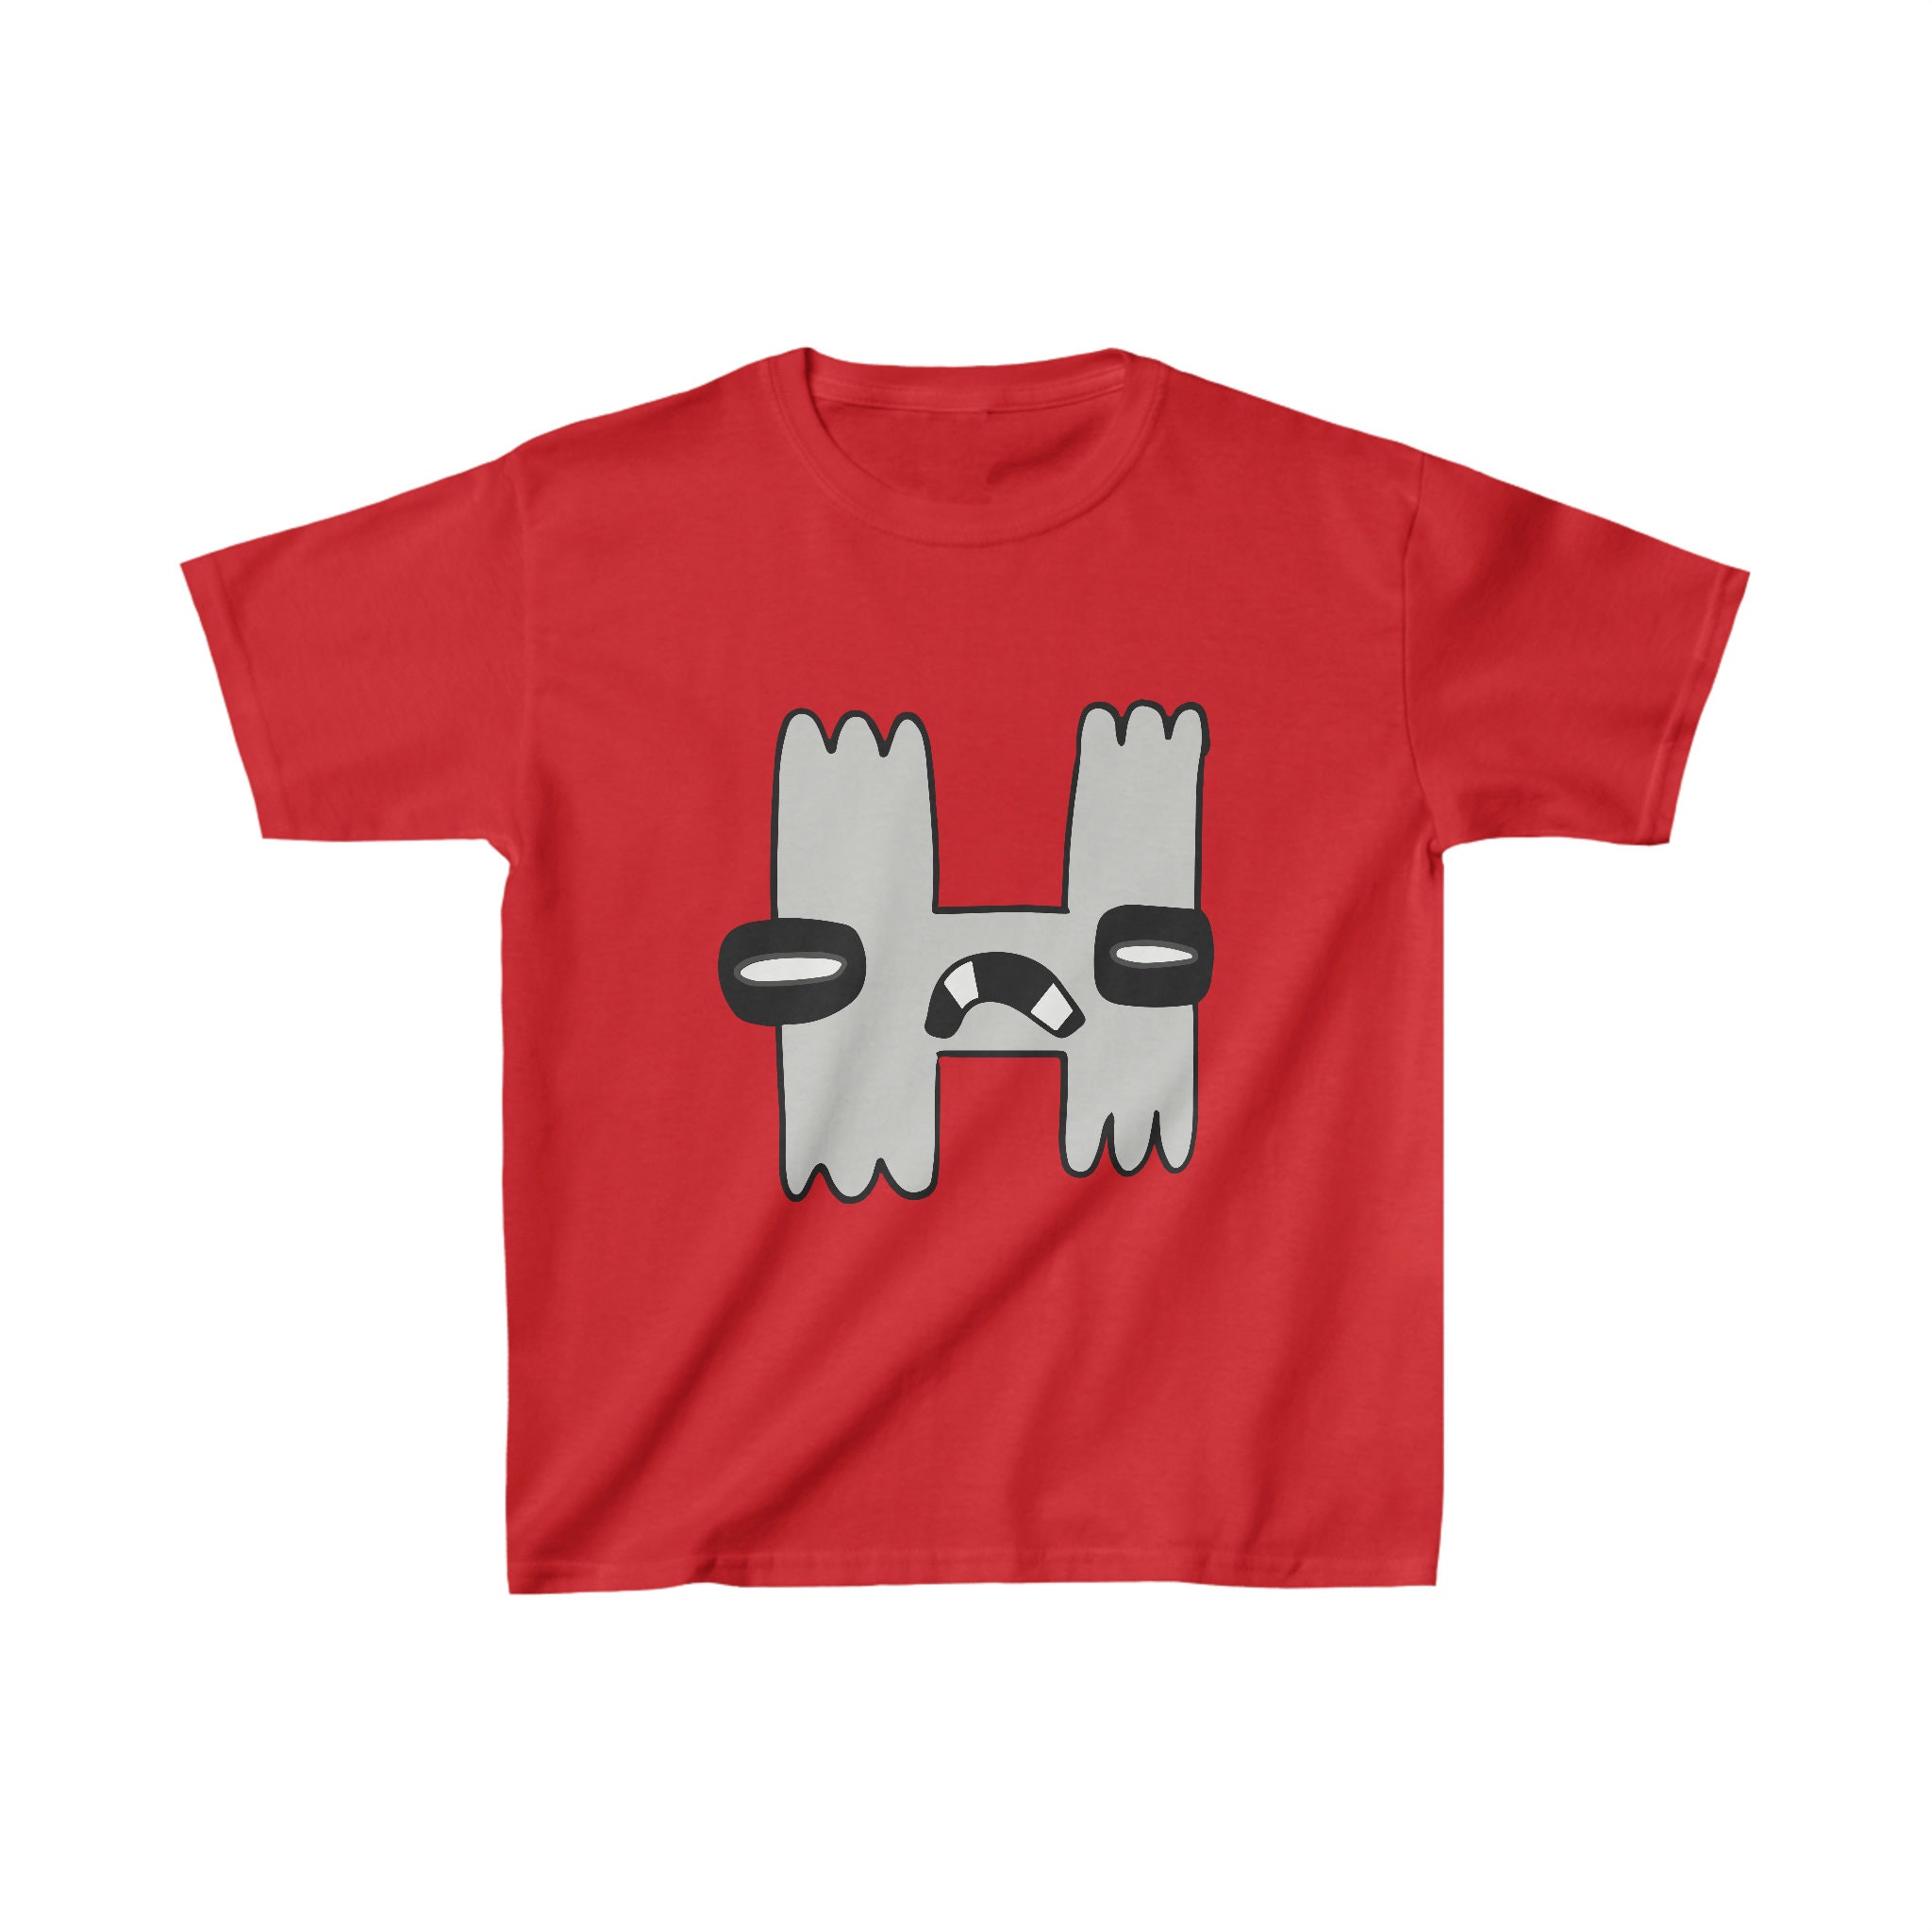 Alphabet Lore h Kids T-shirt 